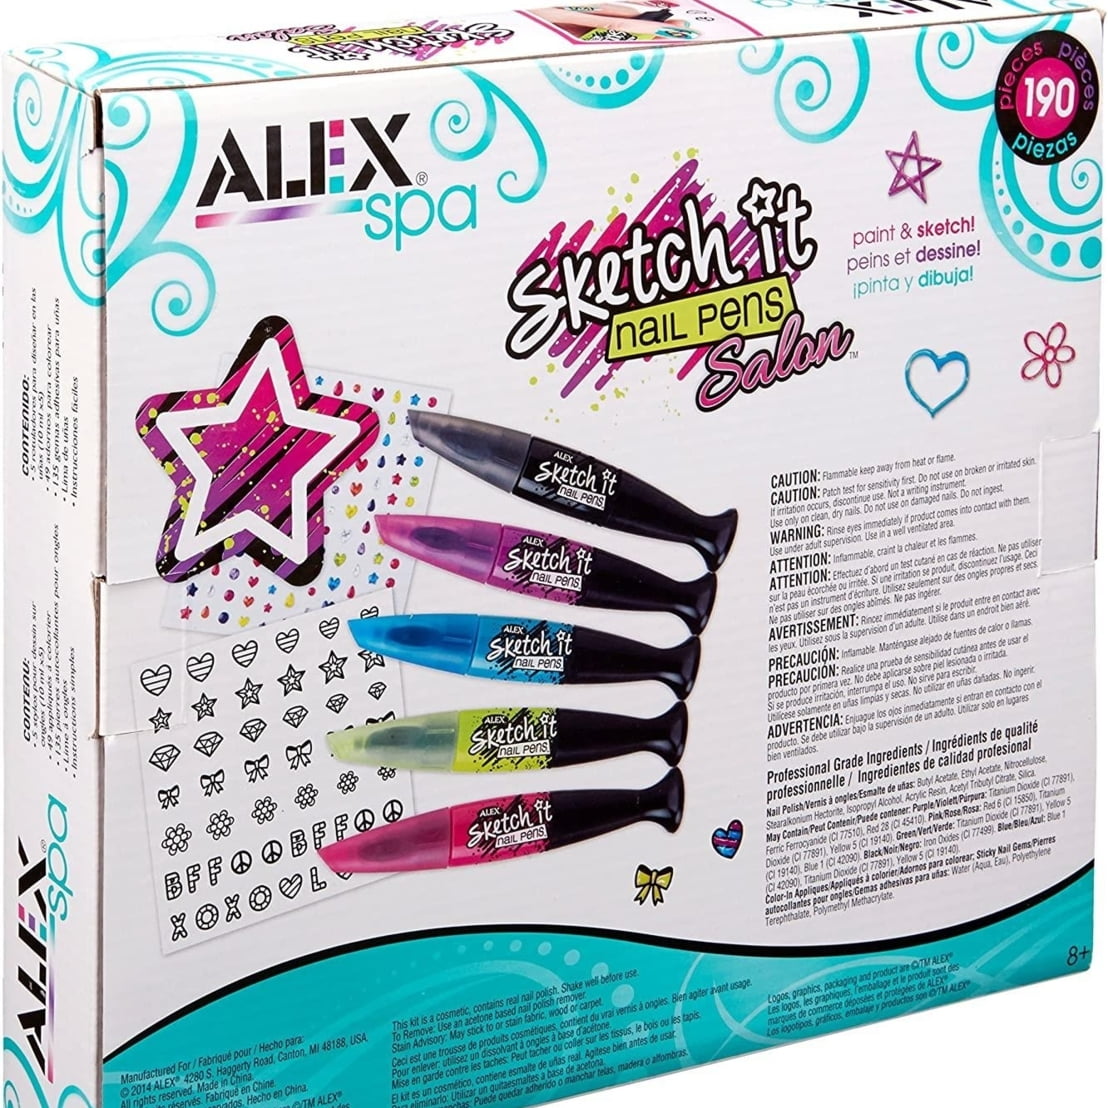 Alex Spa Glow Sketch It Nail Pens Girls Fashion Activity | eBay